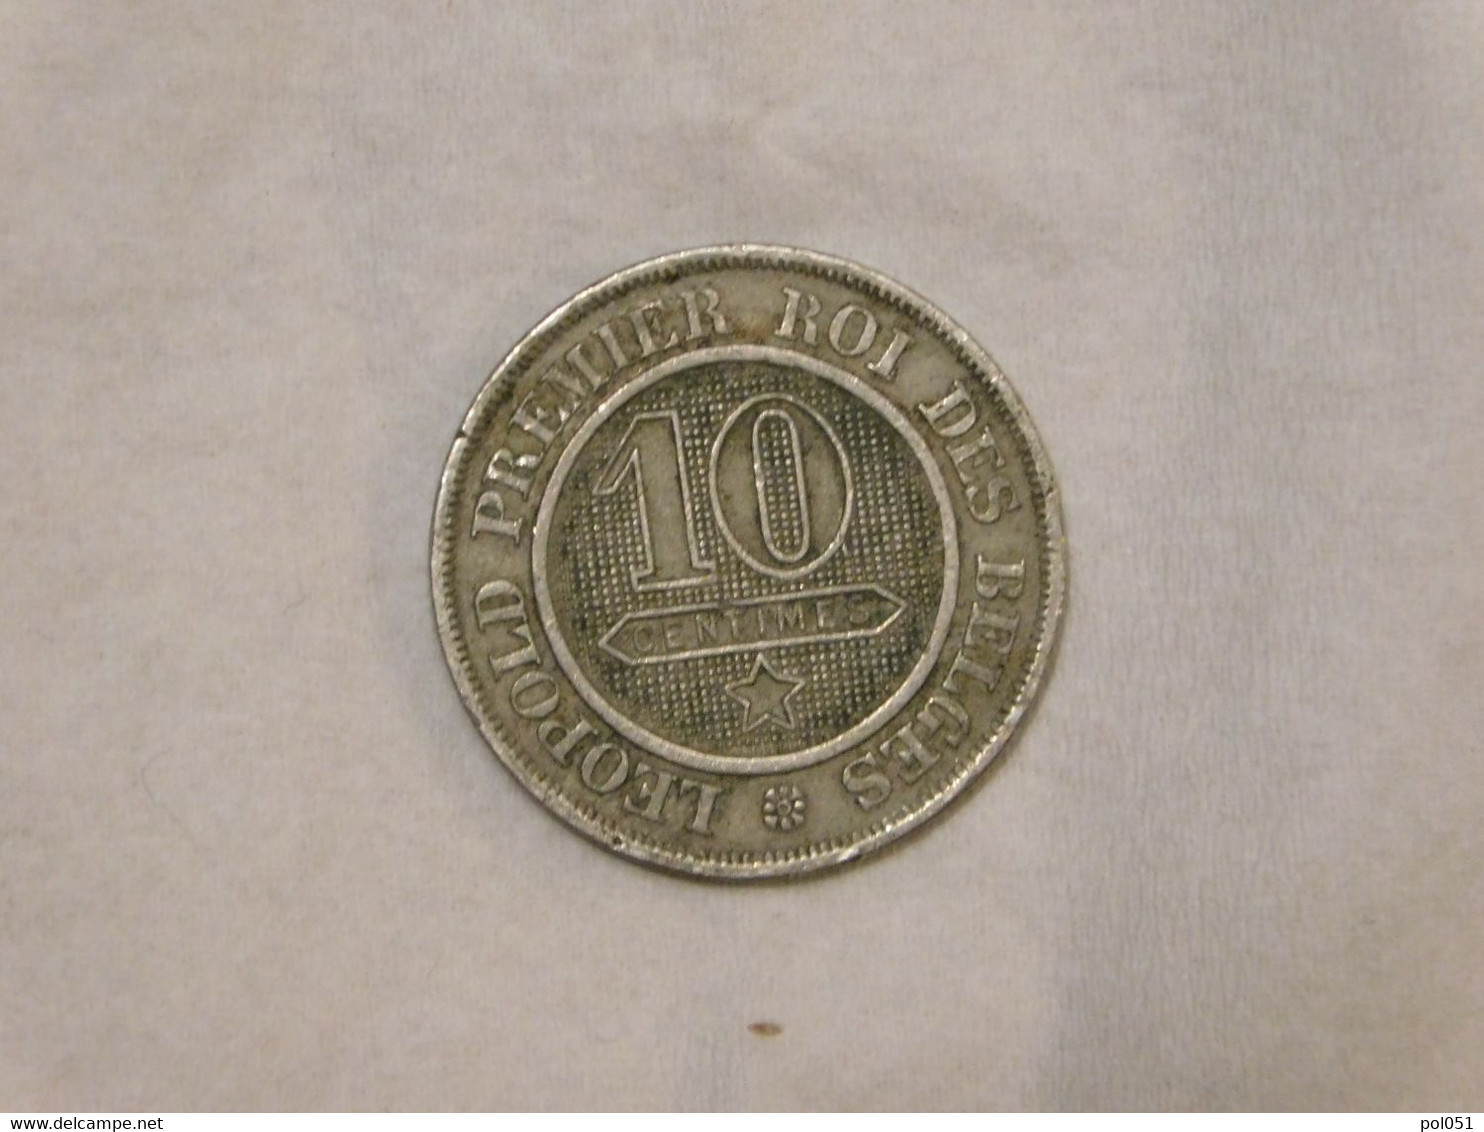 Belgique 10 Cent 1862 Centimes - 10 Cents